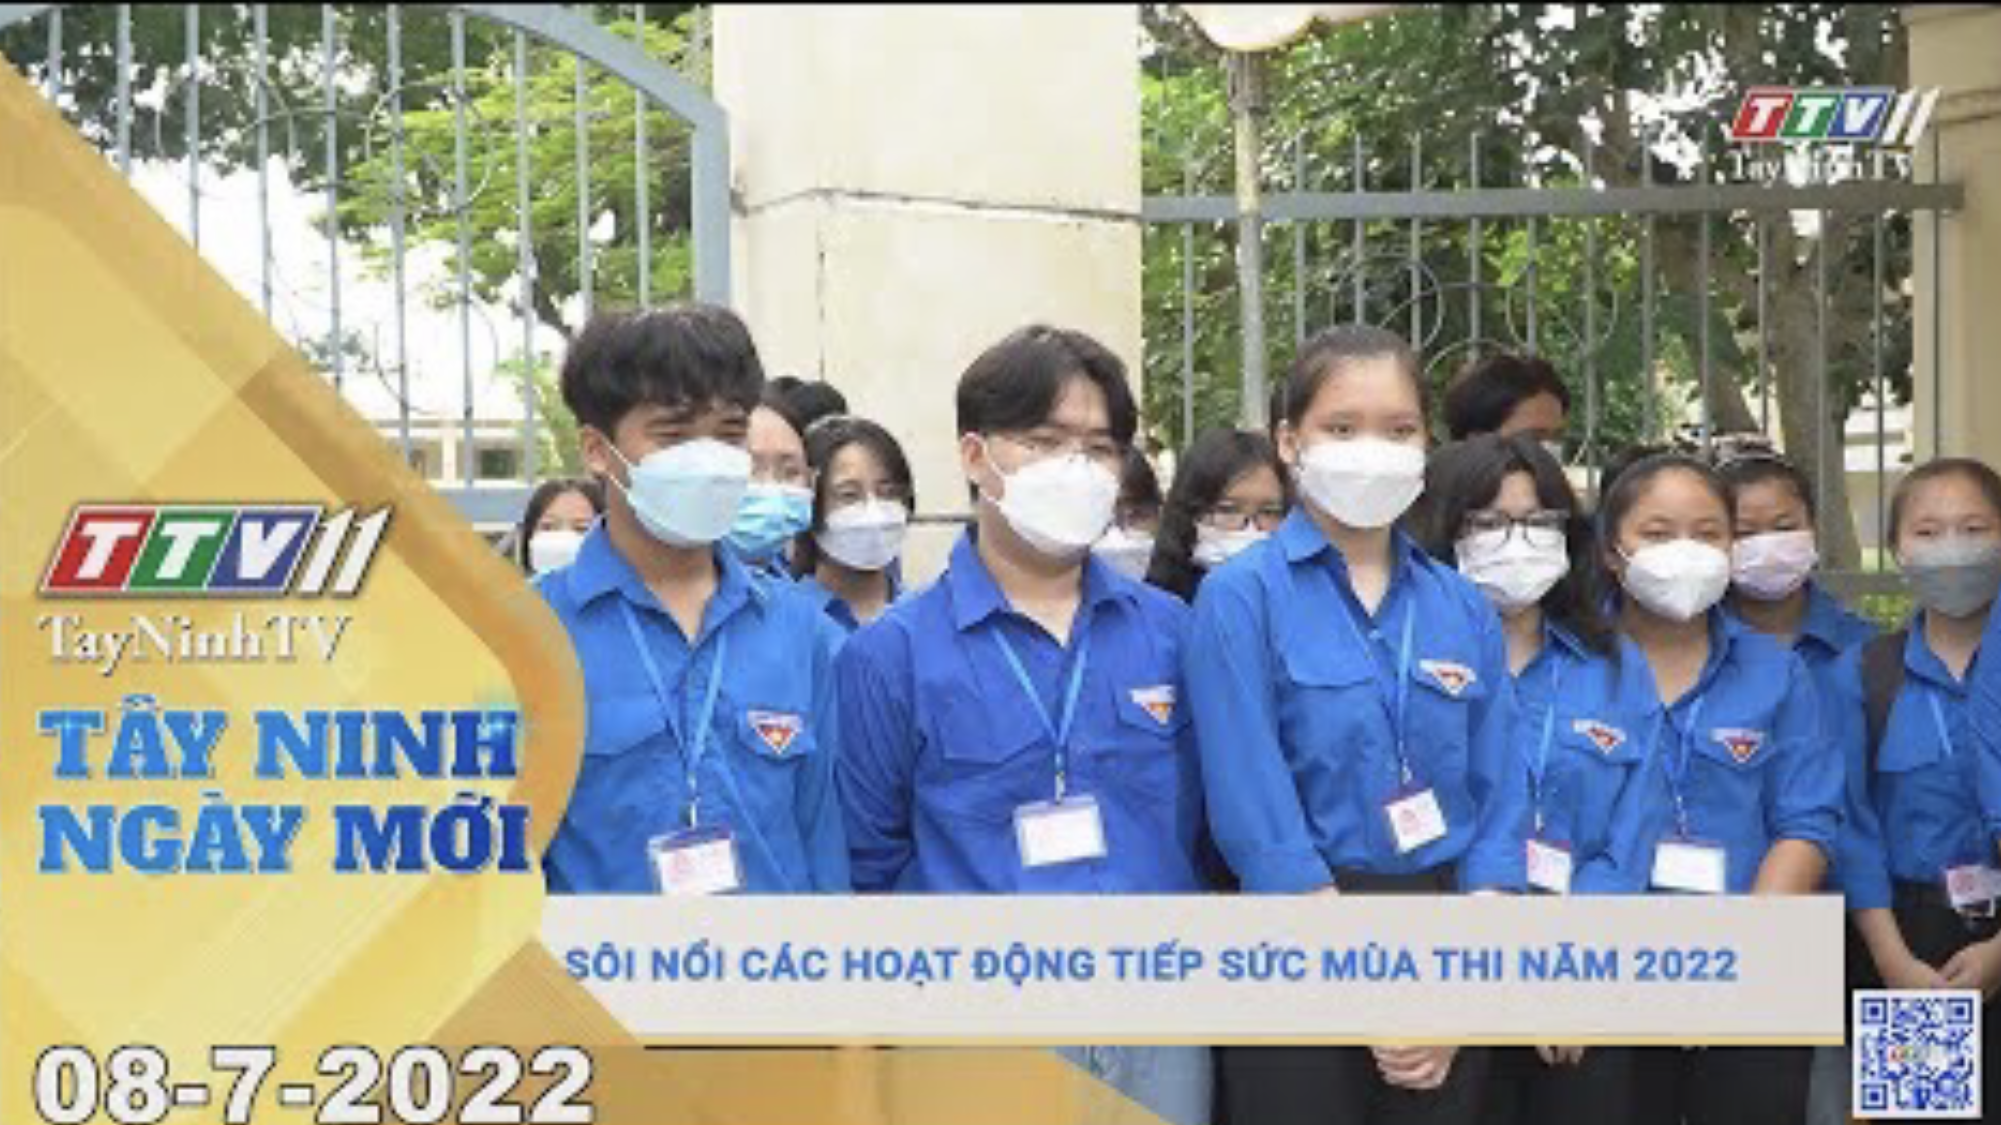 Tây Ninh ngày mới 08-7-2022 | Tin tức hôm nay | TayNinhTV